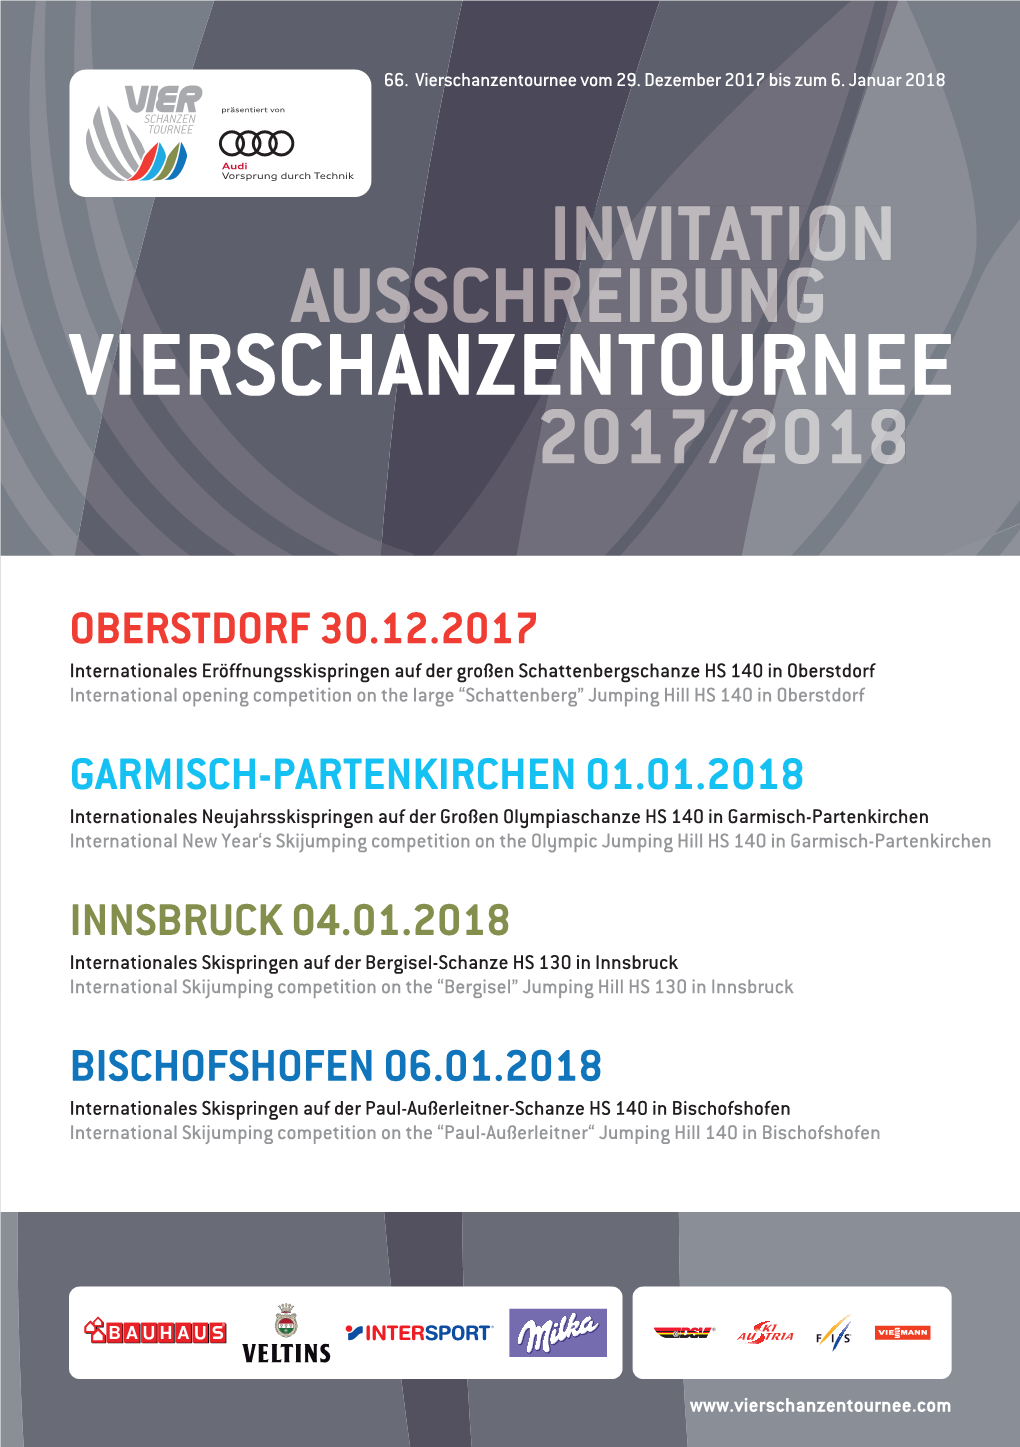 Vierschanzentournee Ausschreibung Sschreibung 2017/2018 Invitation